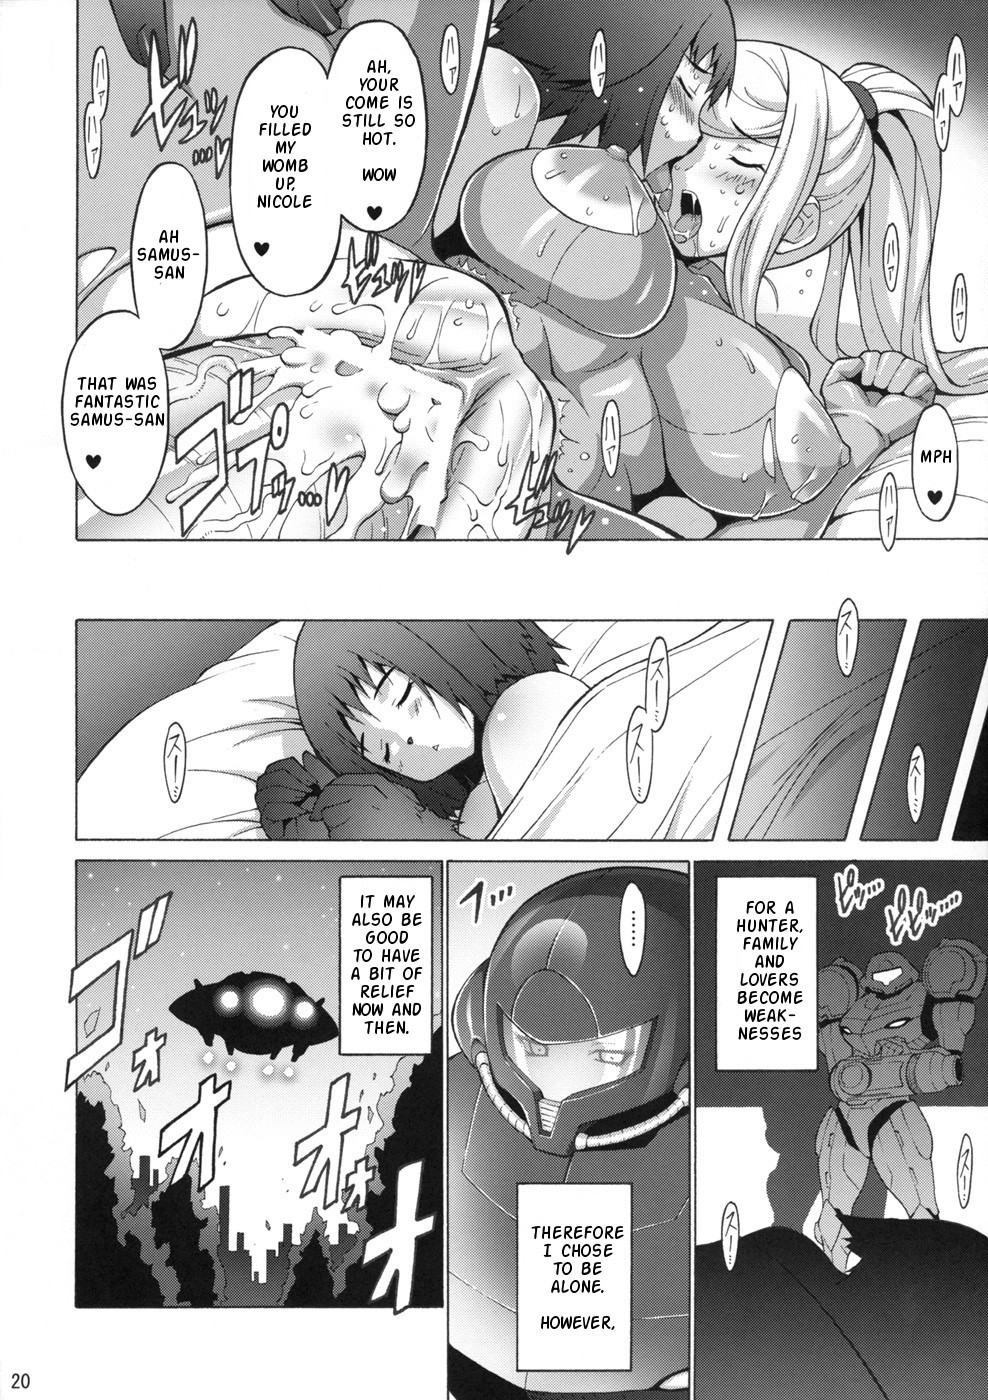 Erosuit Samus X hentai manga picture 20